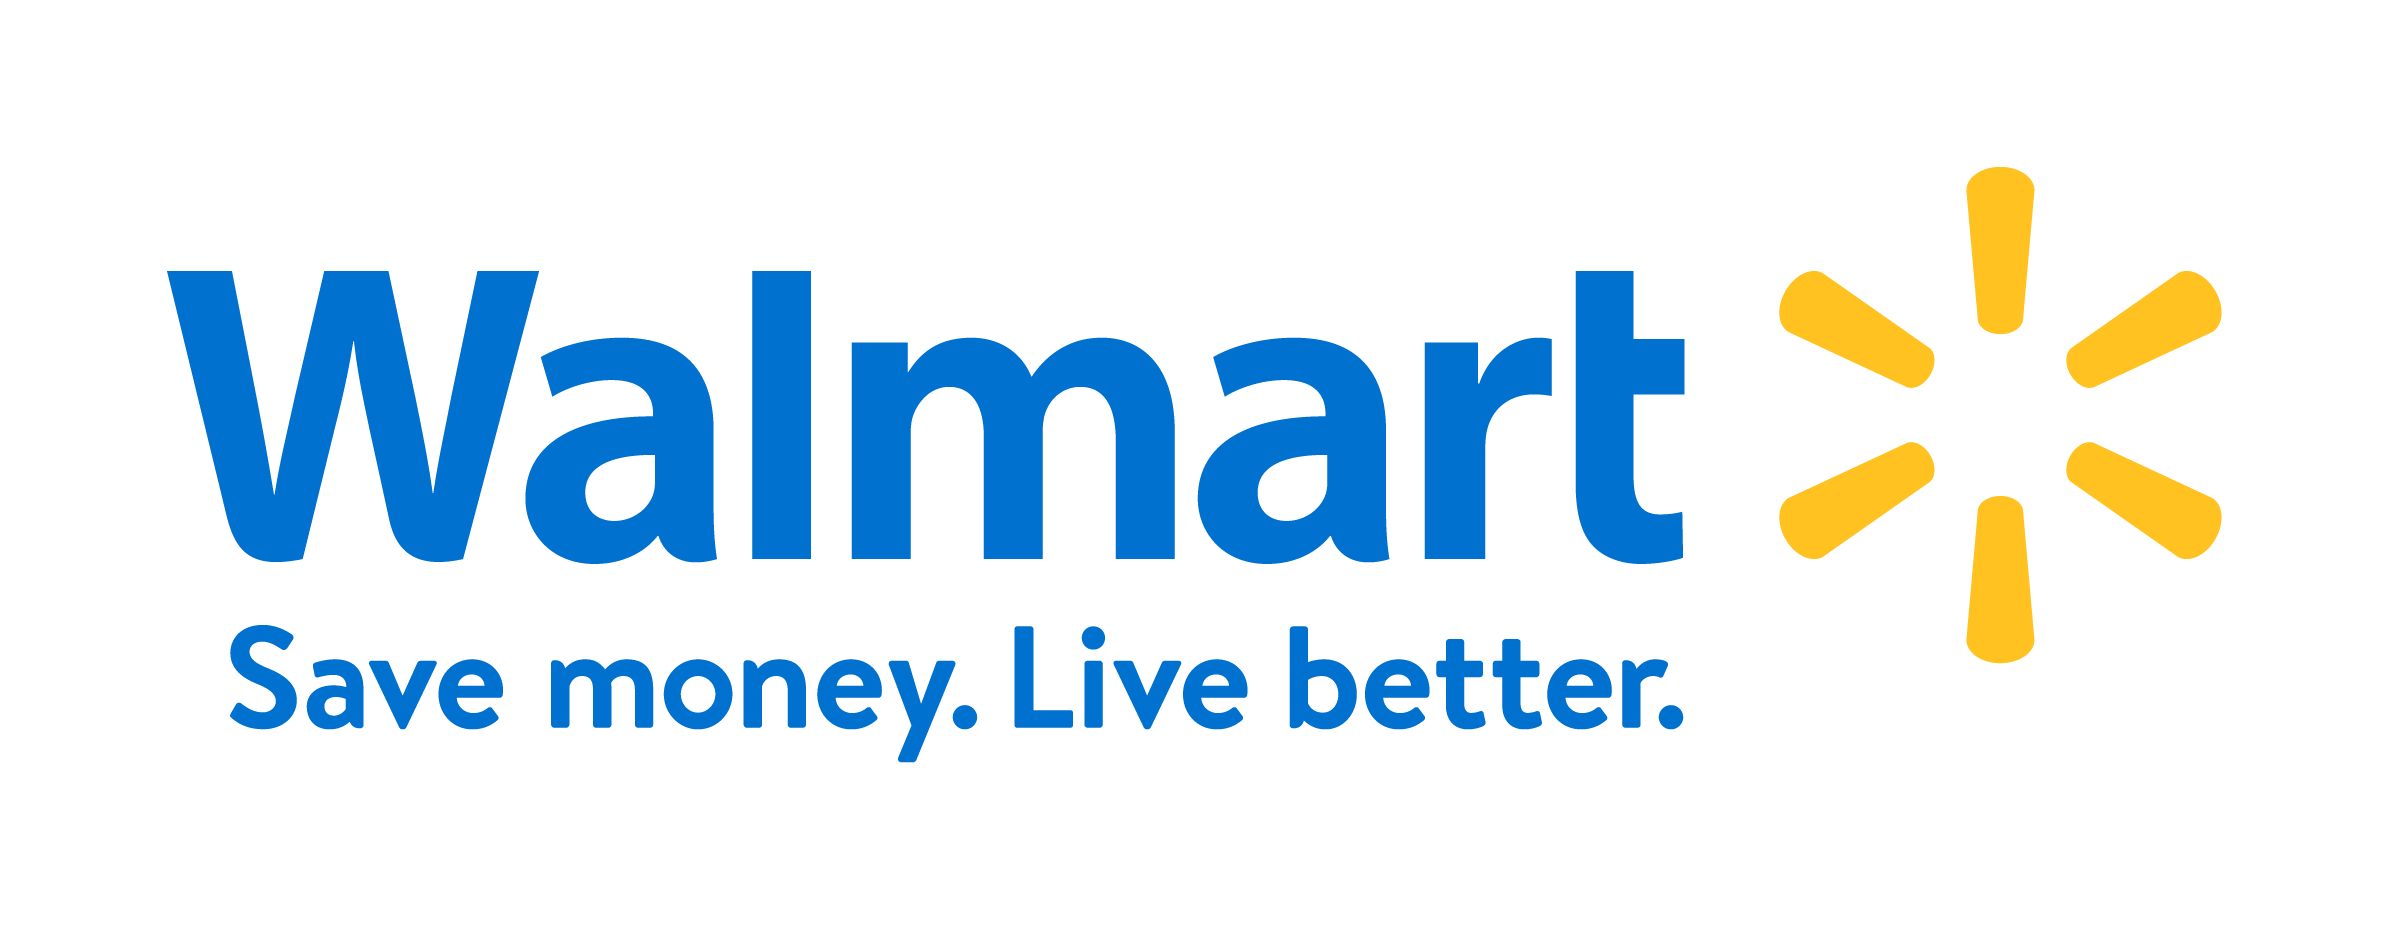 1-Walmart.png